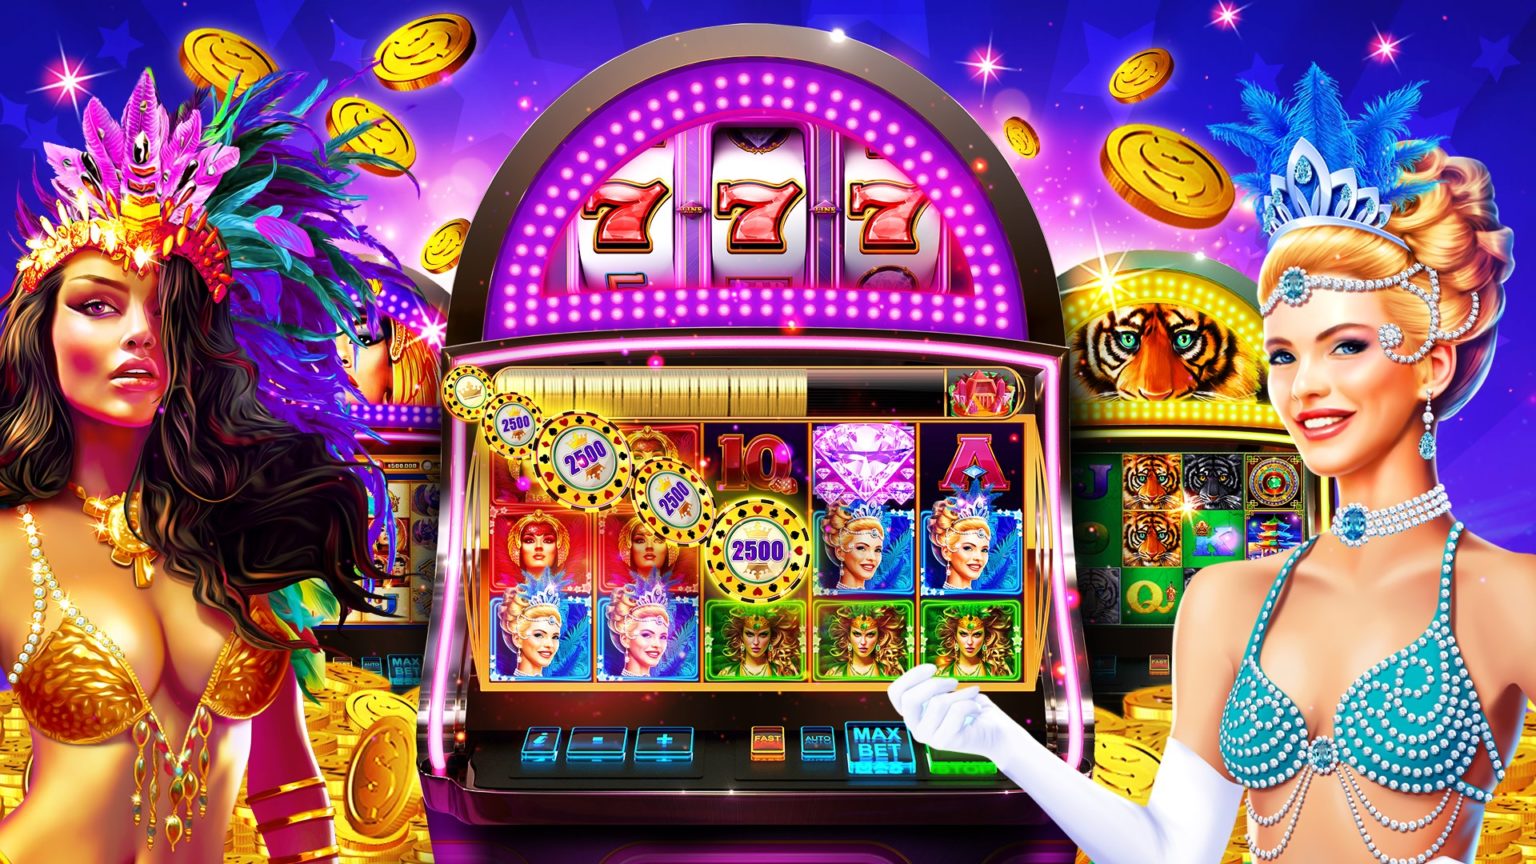 игровые автоматы онлайн клуб казино играть бесплатно